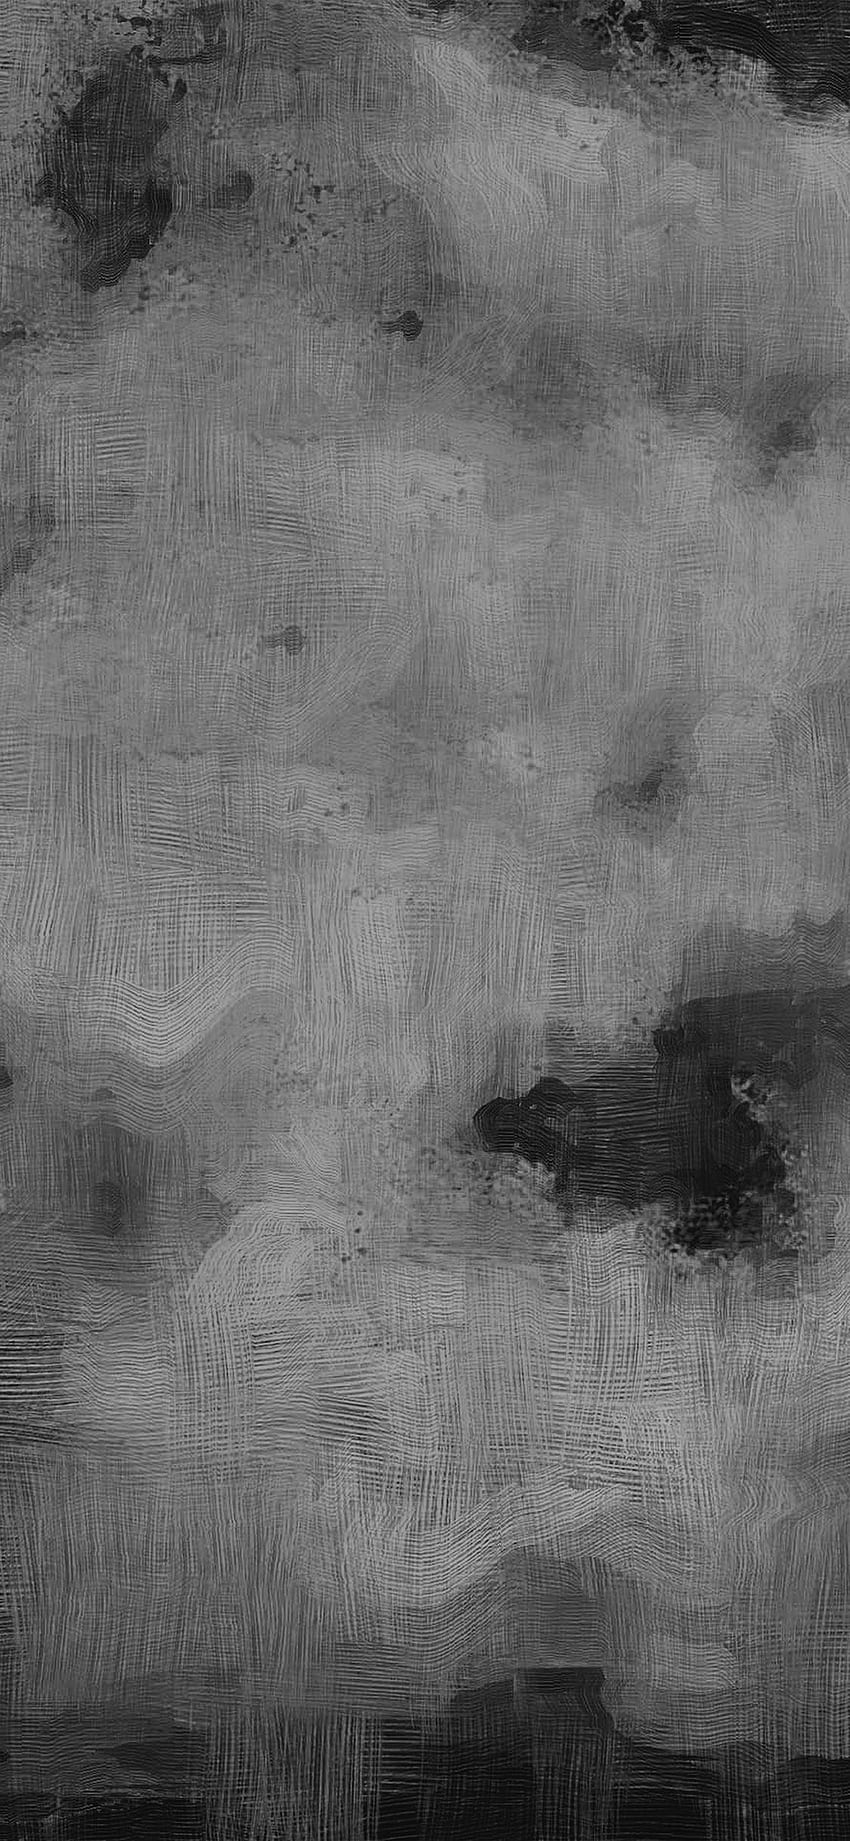 iPhonePapers - patrón de pintura al óleo del arte de la textura oscura de la galaxia de Samsung fondo de pantalla del teléfono